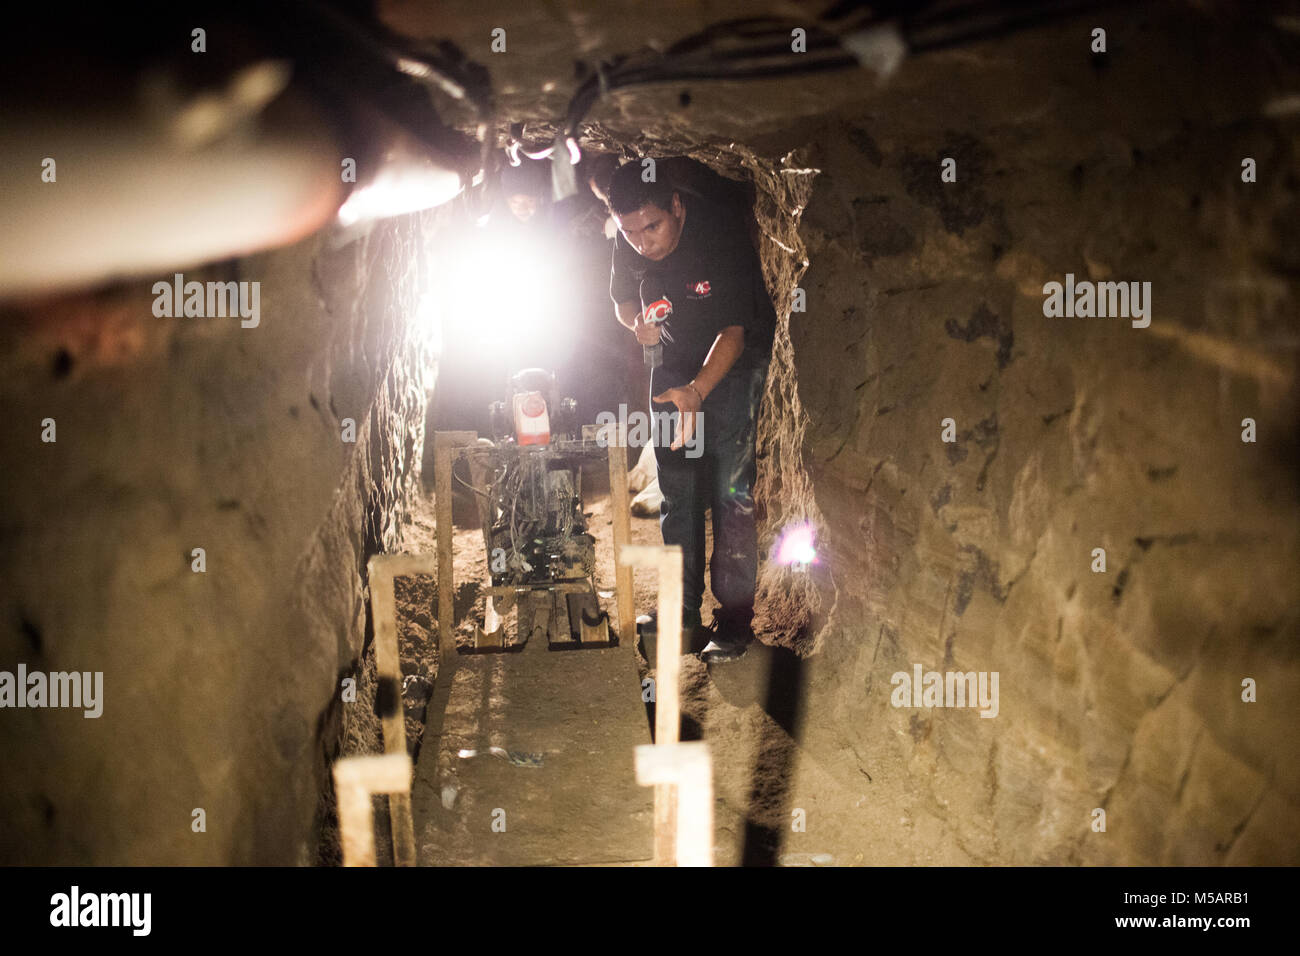 Un journaliste dans le tunnel ferme utilisée par Joaquin "El Chapo" Guzman pour échapper à la prison de l'Altiplano près de Toluca, Mexique le mercredi 15 juillet 2015. Le célèbre chef du cartel Joaquin "El Chapo" Guzman s'est échappé de la prison à sécurité maximum il y a quatre jours, à travers un tunnel. C'est la deuxième fois qu'il a échappé à une prison mexicaine. Banque D'Images